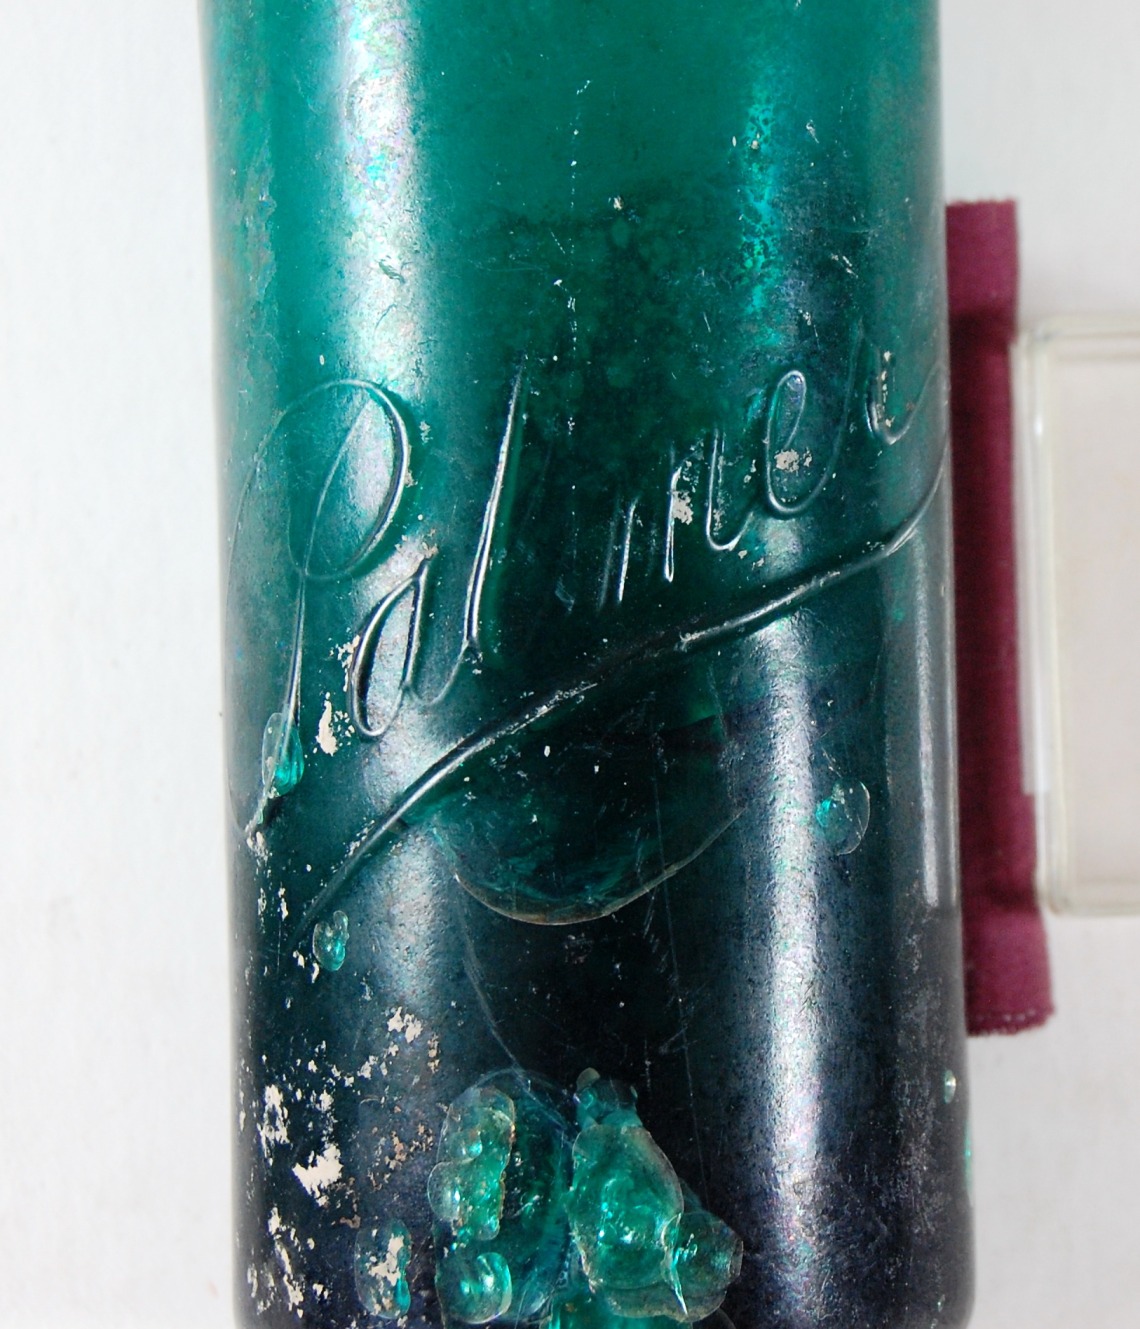 Green glass Palmer’s bottle